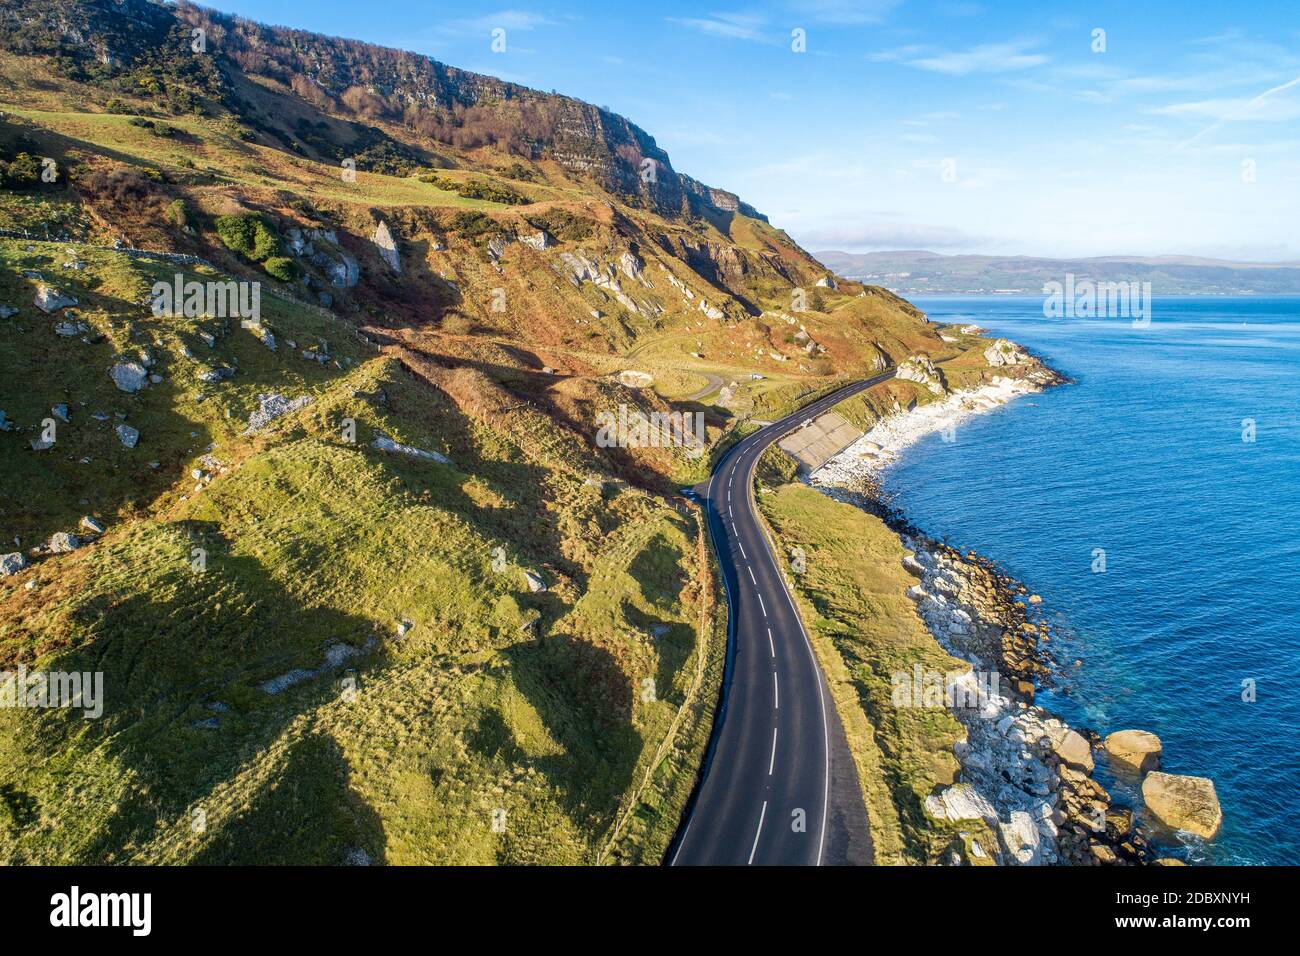 Irlande du Nord : Le guide ultime pour un road trip épique le long des  côtes - Awwway